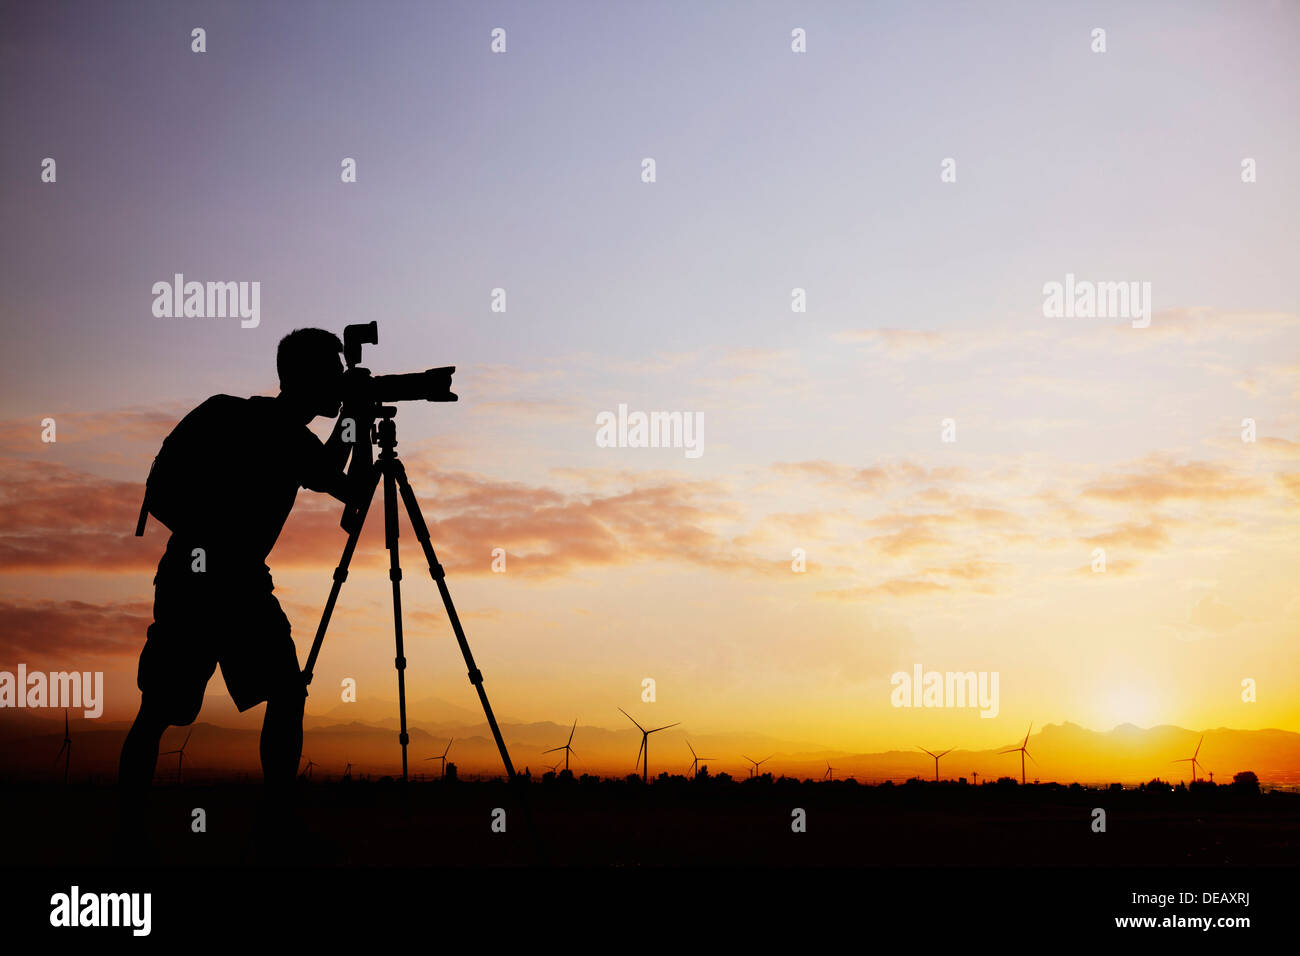 Silhouette des Menschen mit seiner Kamera bei Sonnenuntergang mit einem dramatischen Himmel fotografieren Stockfoto